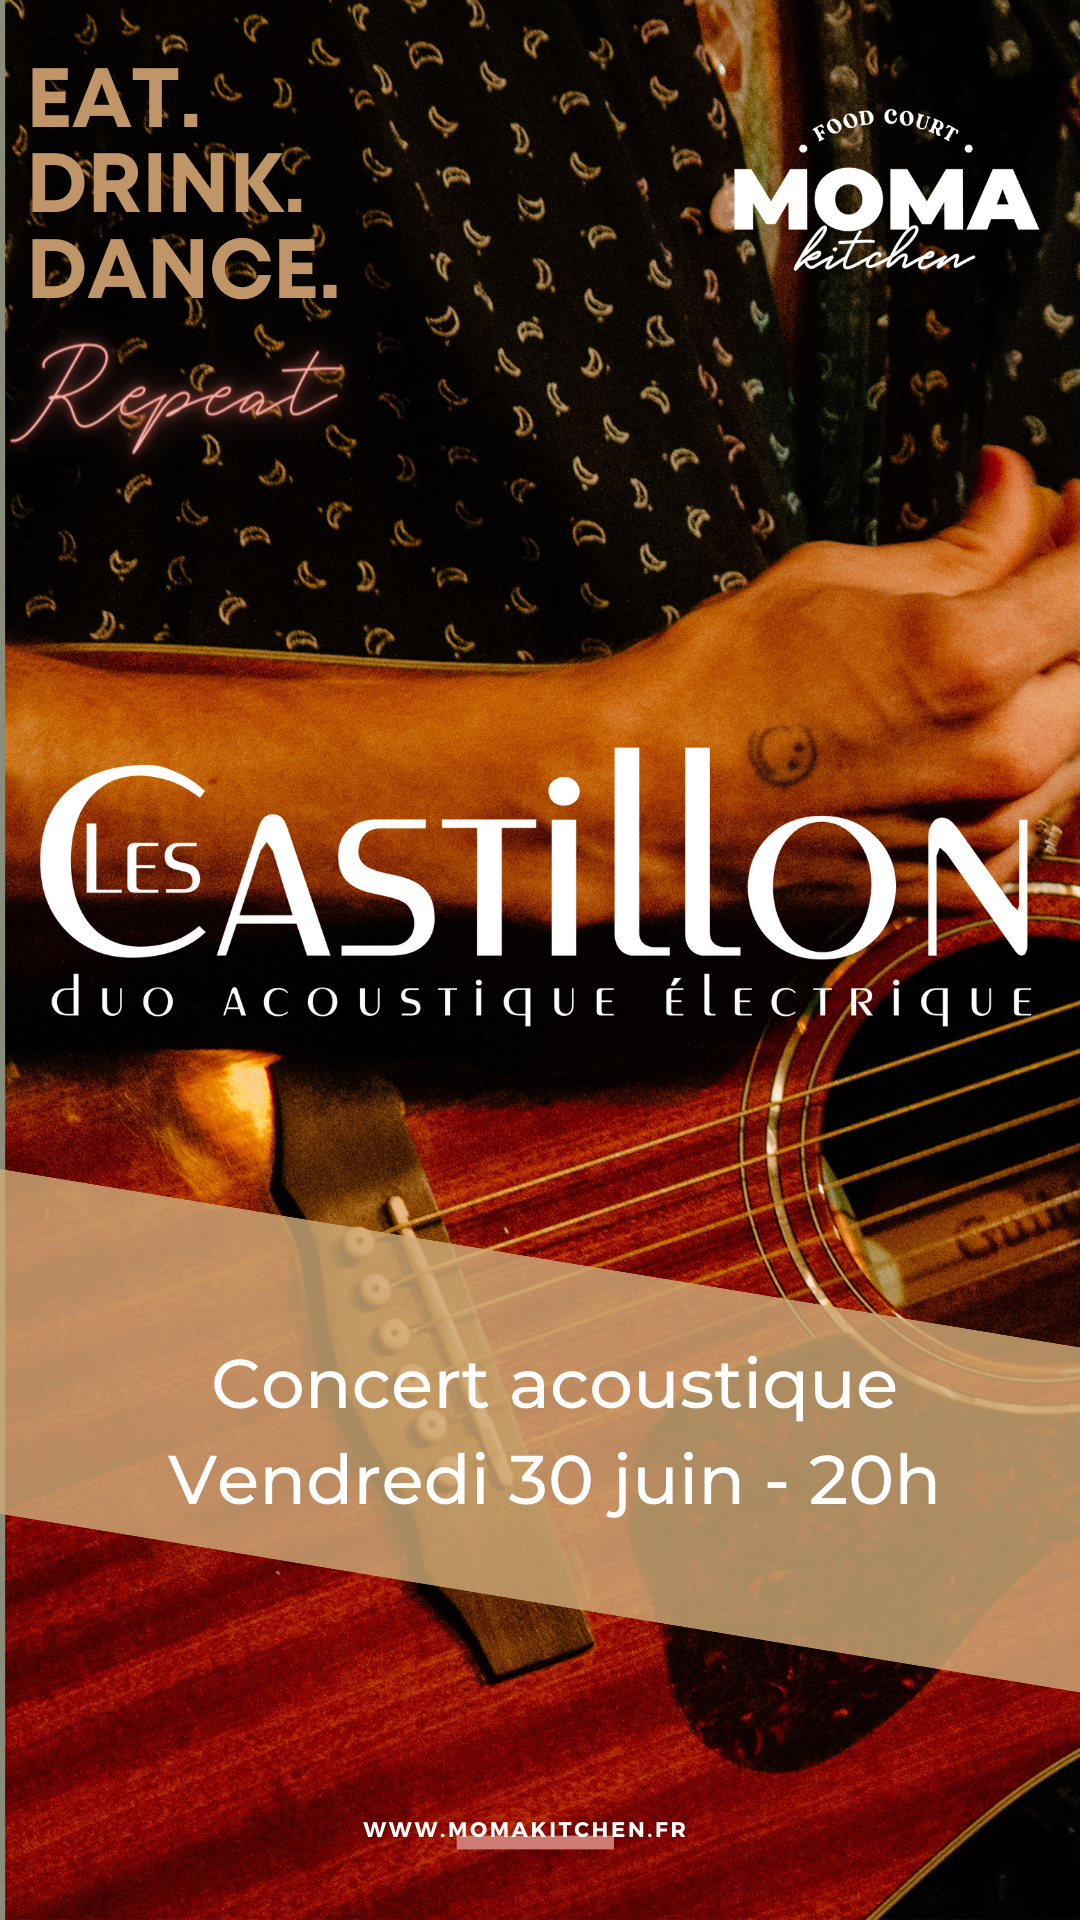 Concert acoustique Les Castillons